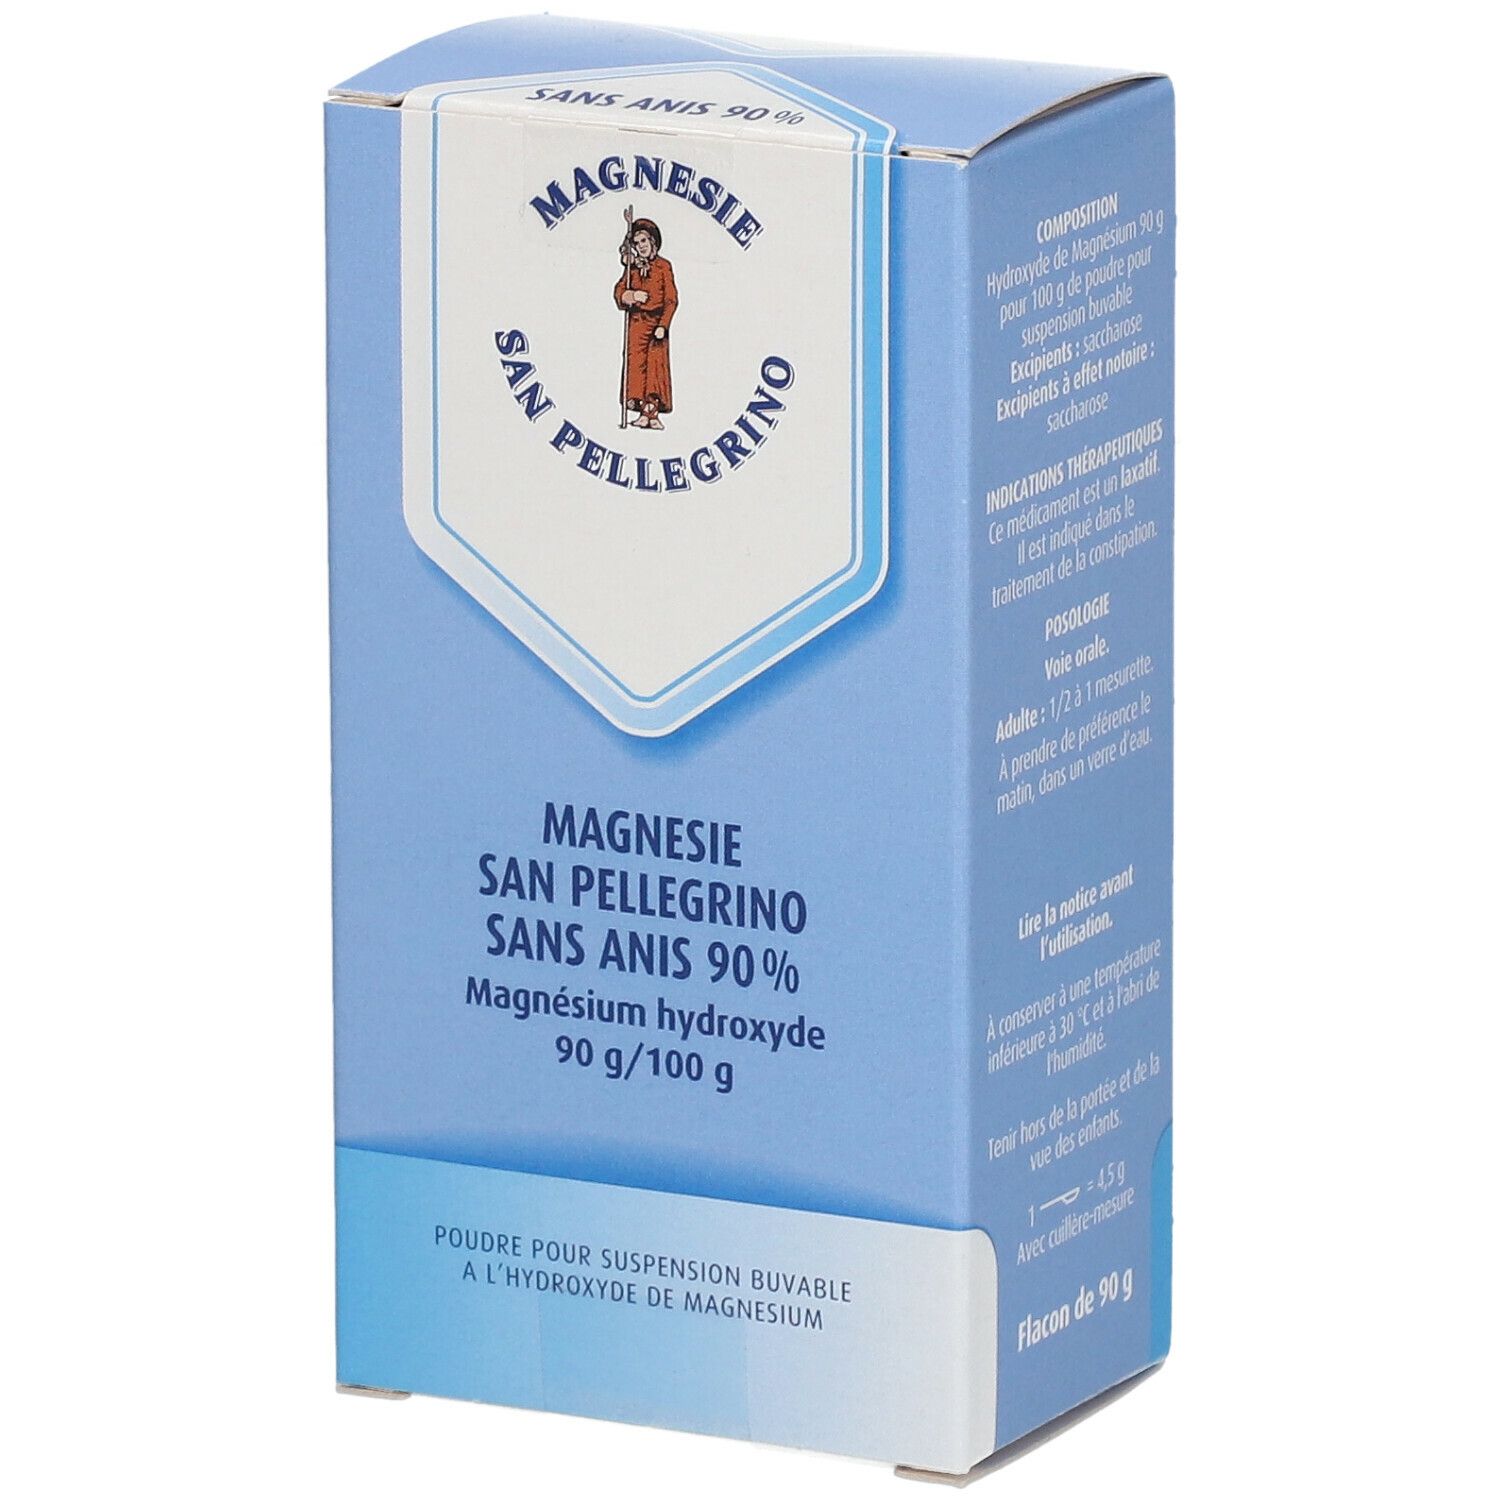 Magnésie San Pellegrino anisée 90% poudre orale 90g - Médicament conseil -  Pharmacie Prado Mermoz